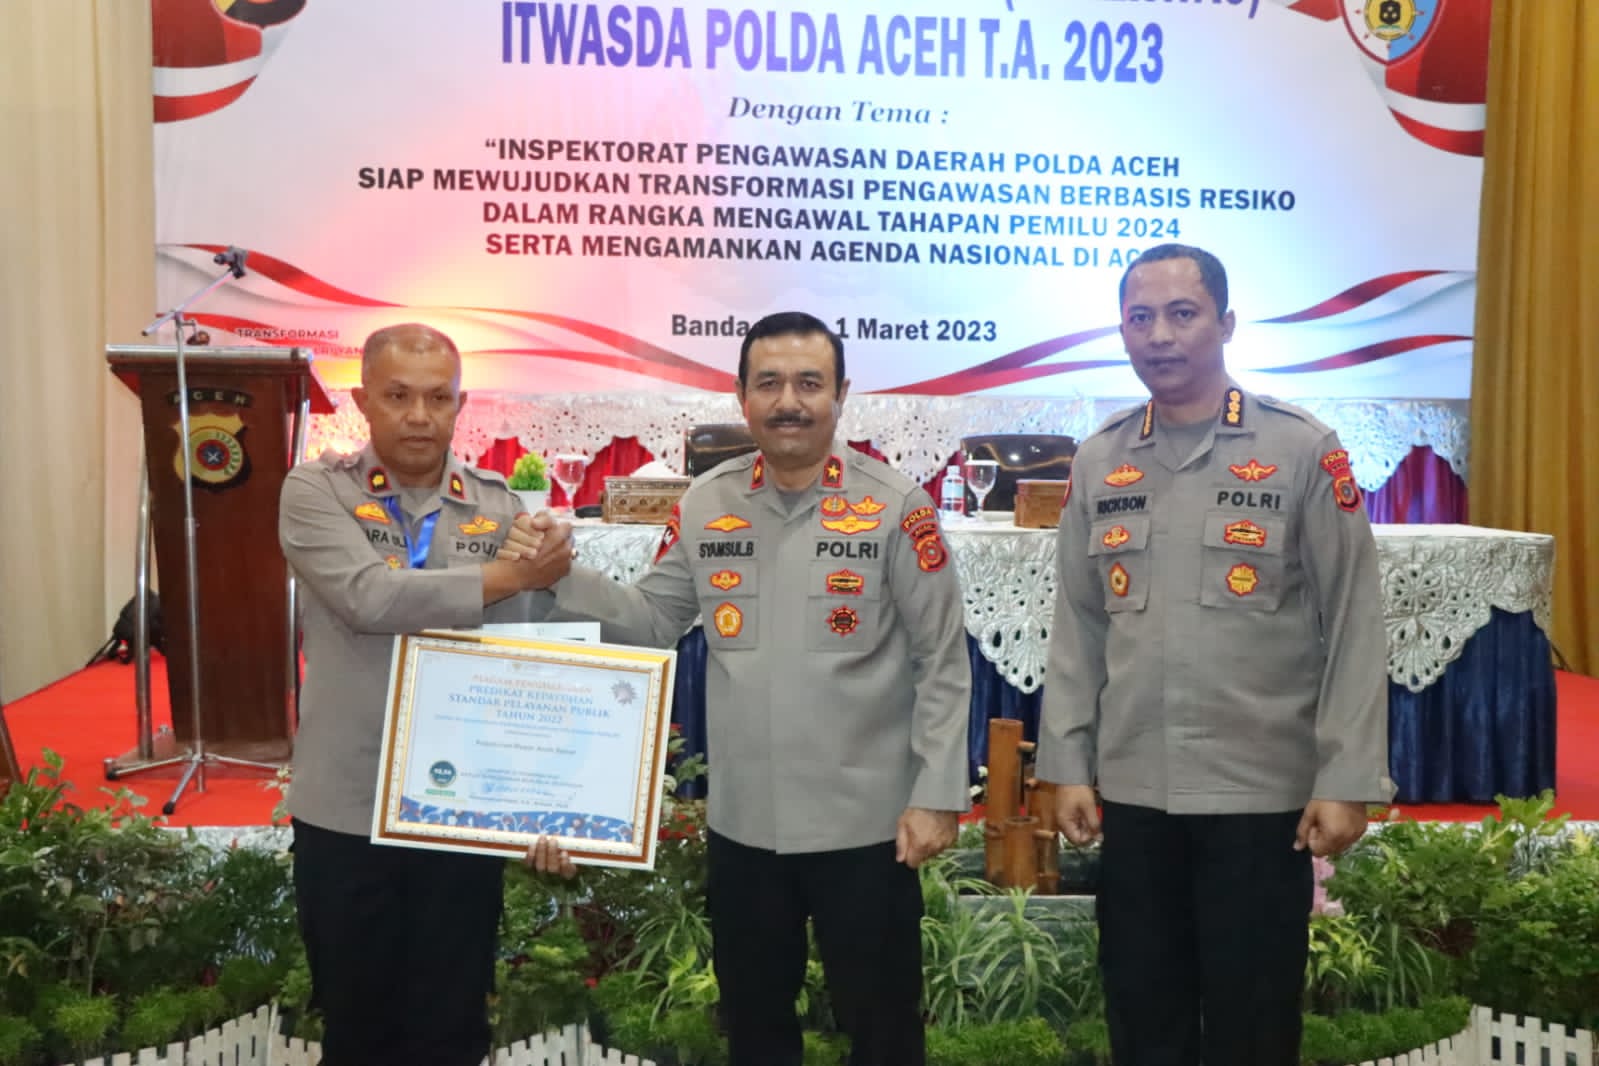 Wakapolda Aceh Buka Rakerwas Itwasda 2023